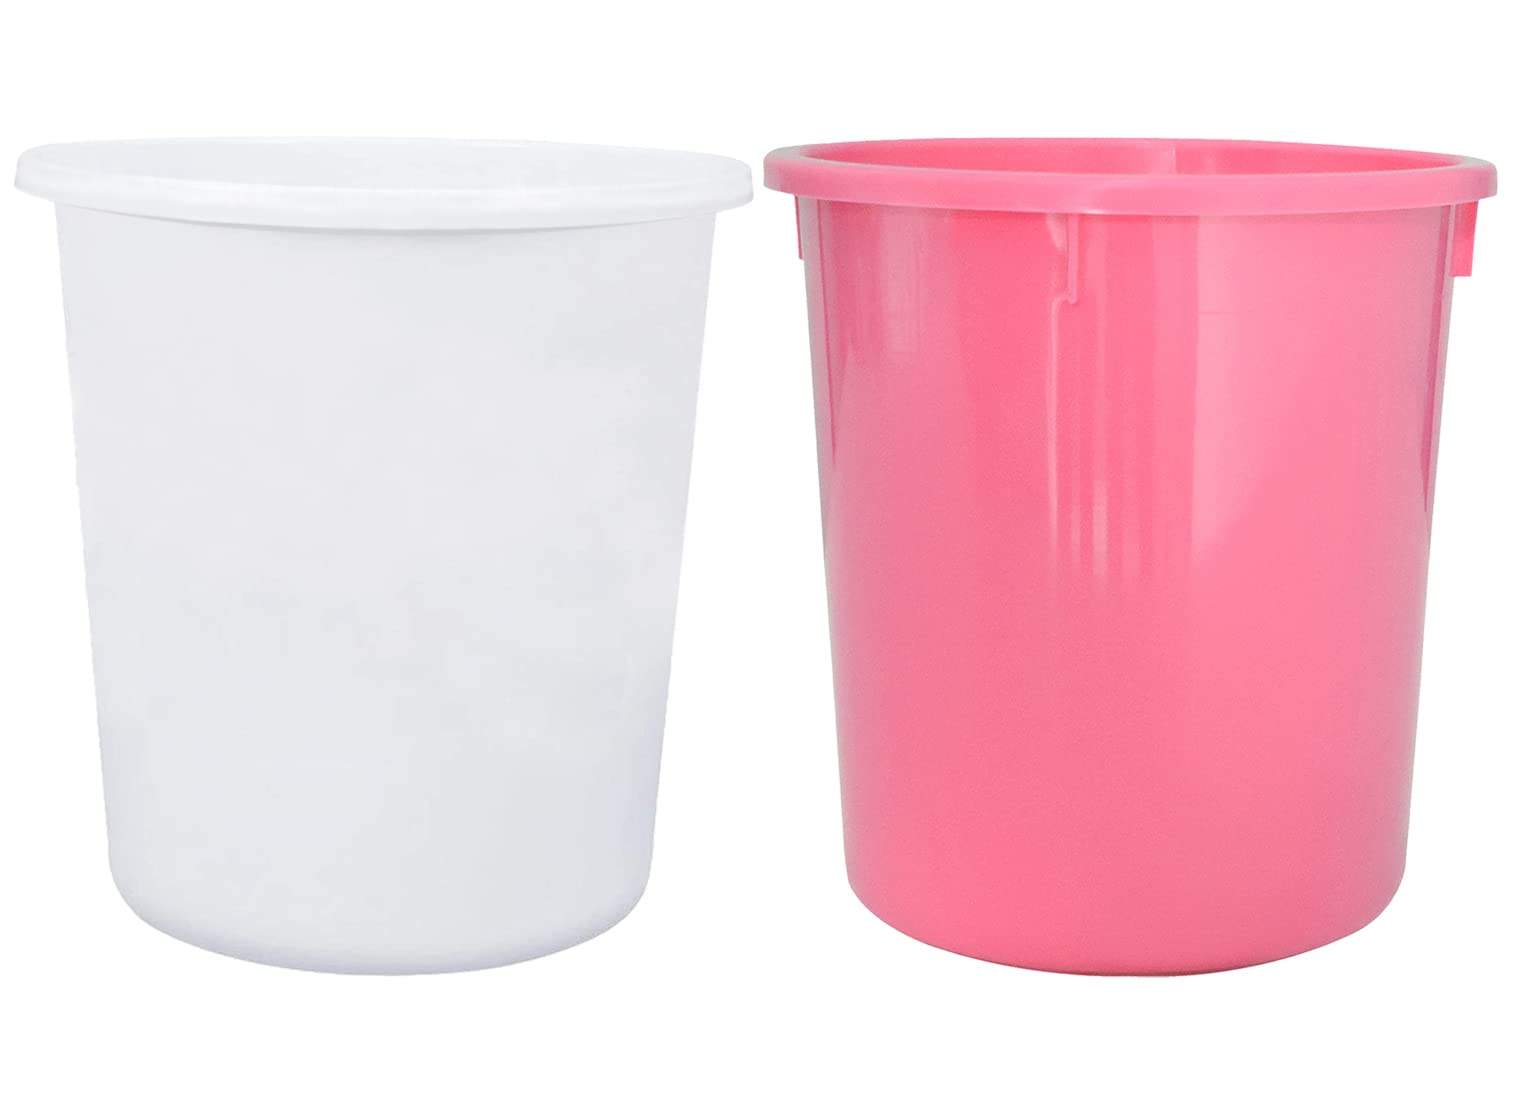 Kuber Industries Plastic Open Dustbin, Trash Bin, Garbage Bin, Waste Bin, 5Ltr.- Pack of 2 (Pink & White)-47KM01074